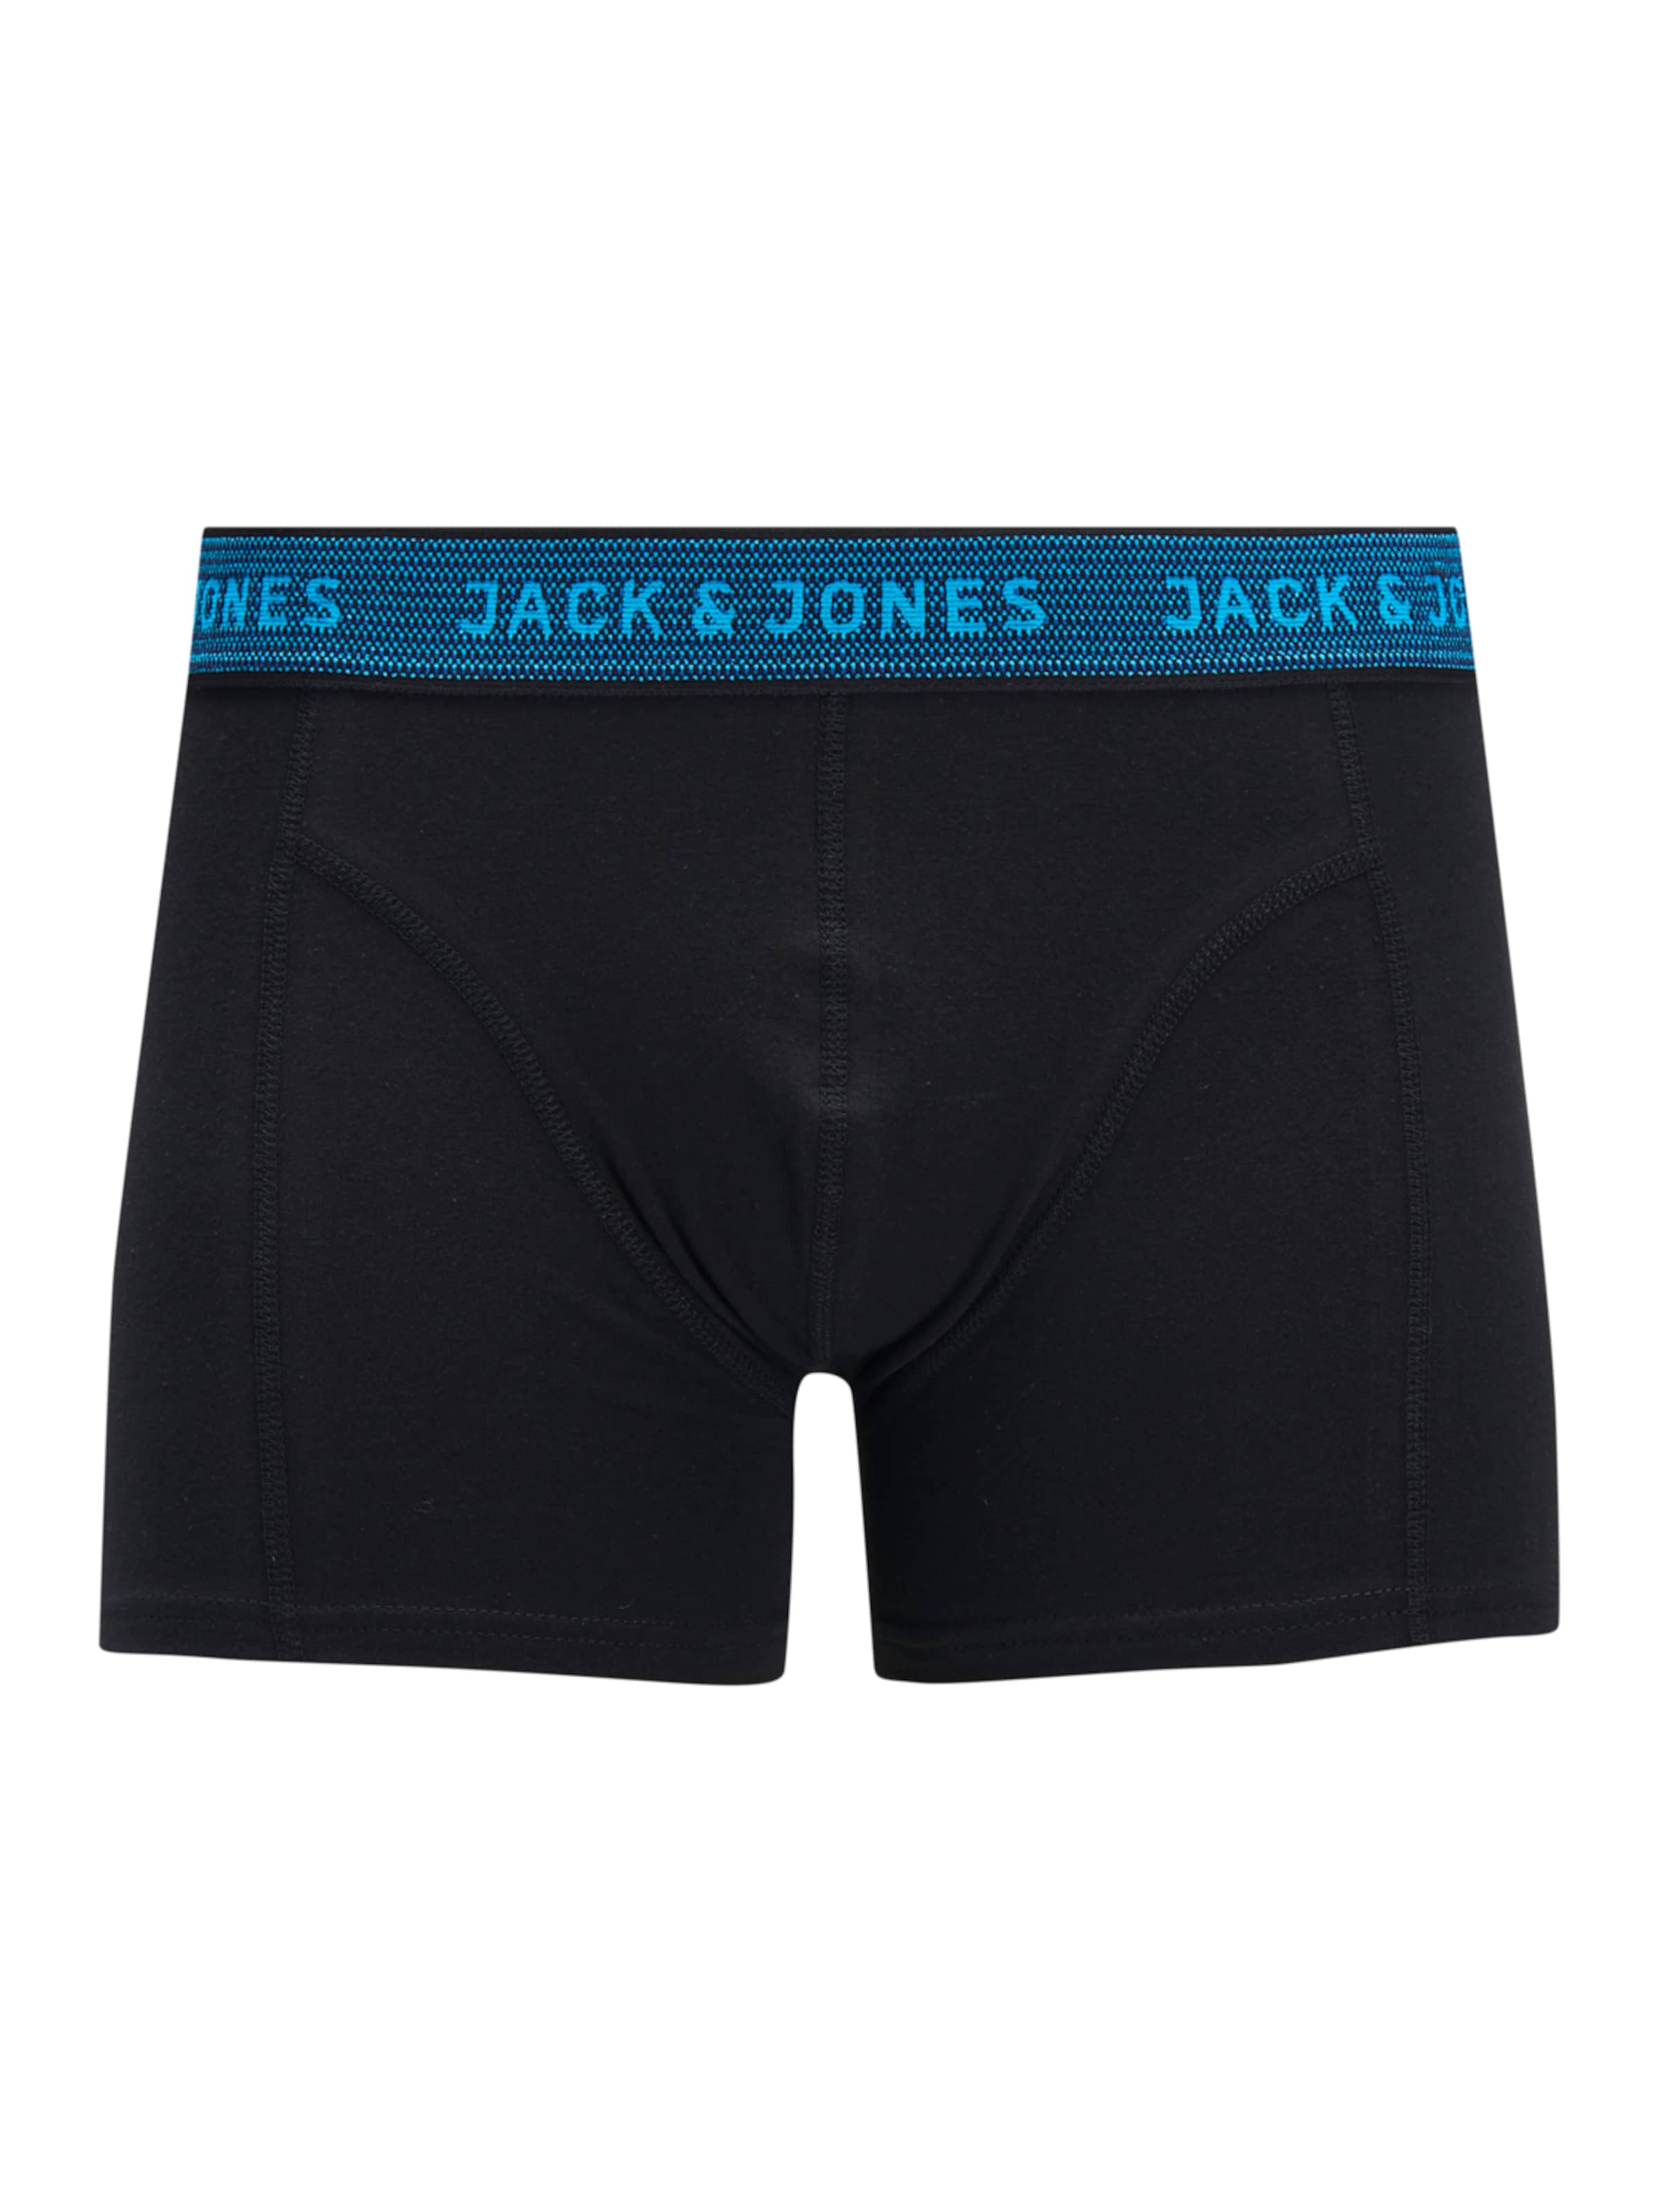 Jack & Jones Boxers XXL Noir